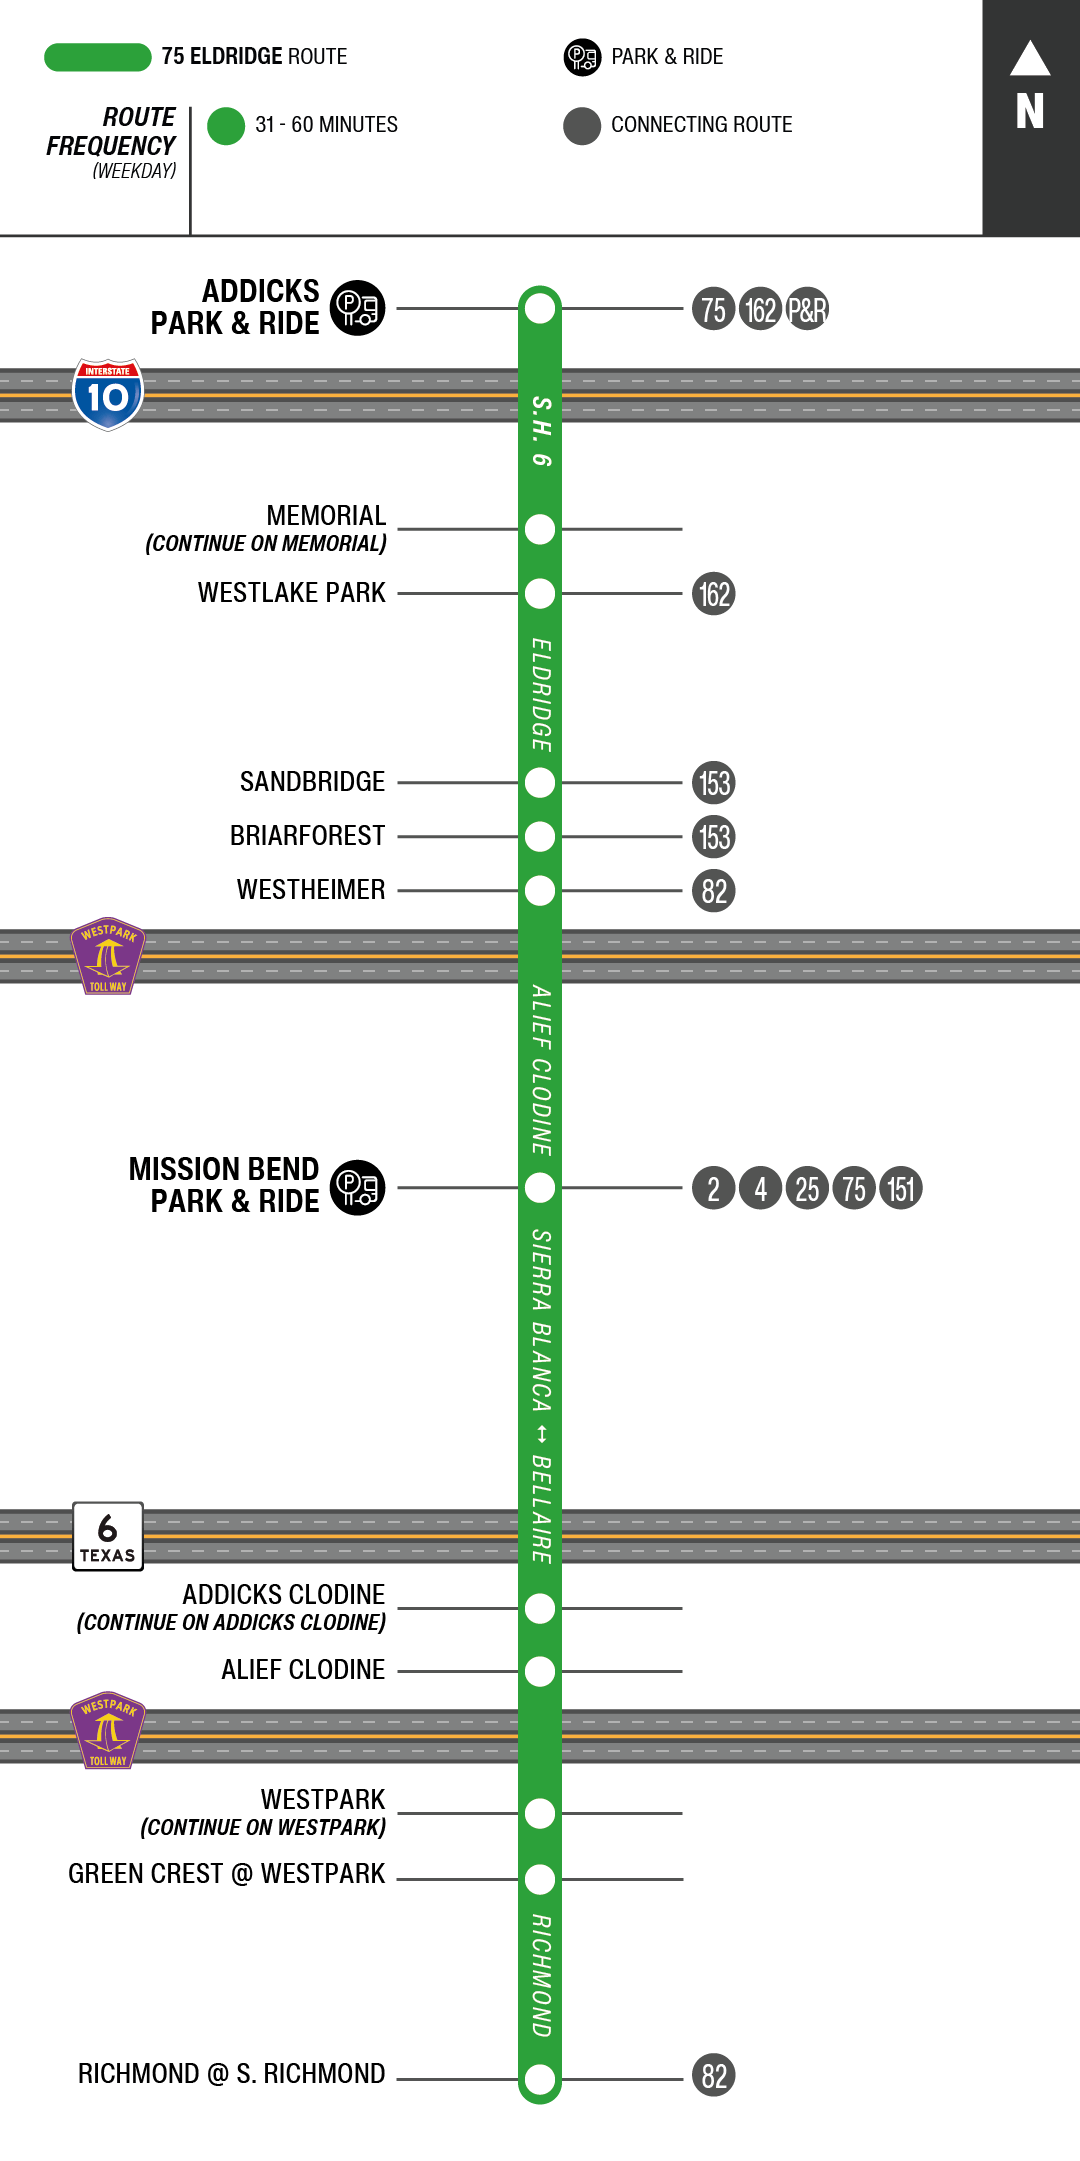 Route map for 75 Eldridge bus